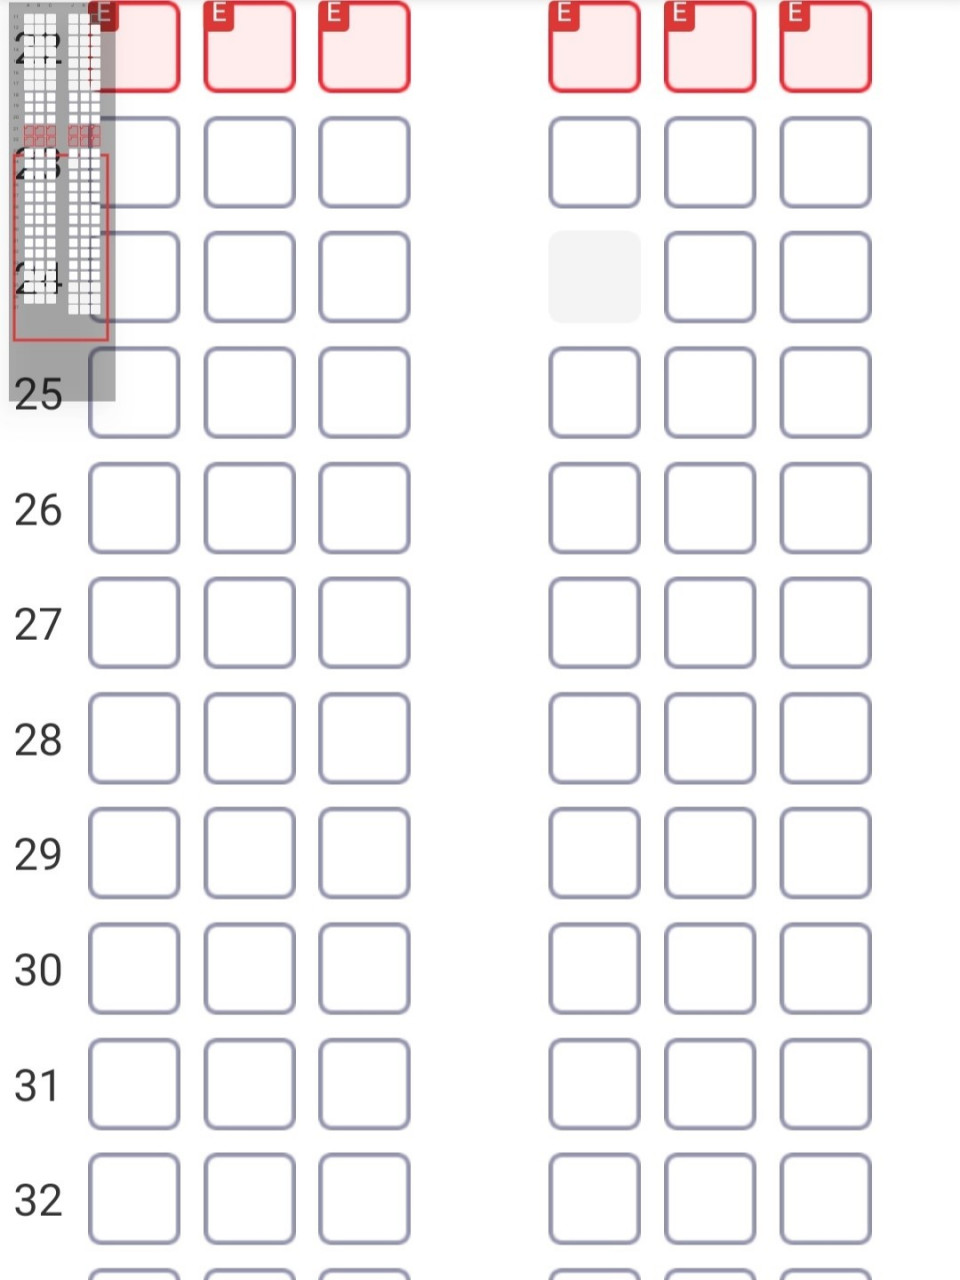 波音738中型机选座求意见 只能从18排开始哦,最多34排